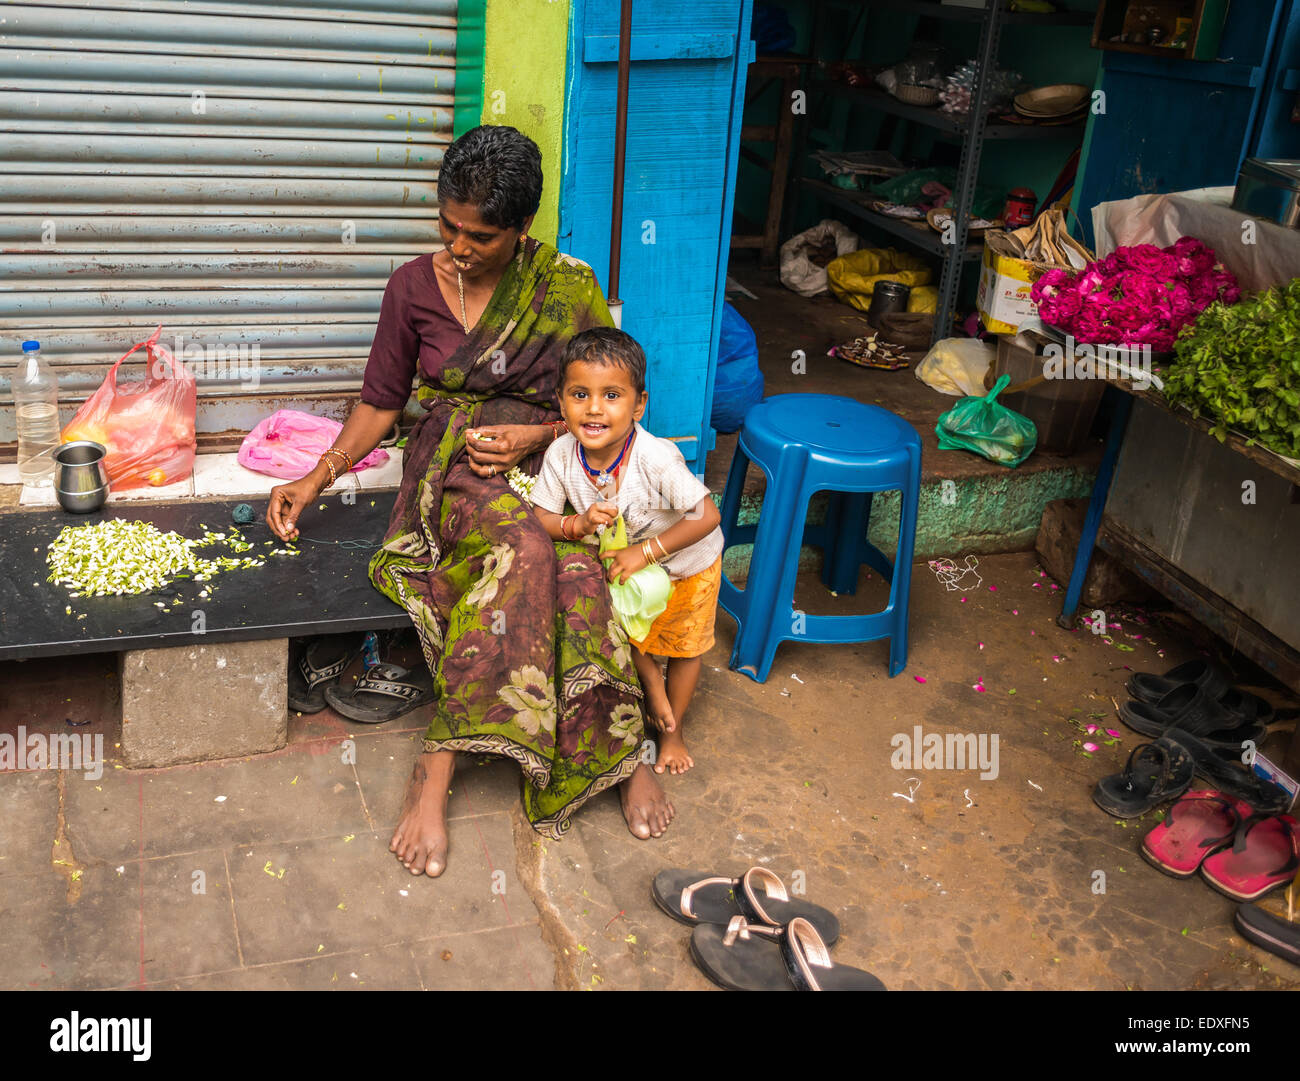 THANJAVOUR, India - 14 febbraio: un bambino non identificato e una donna nel tradizionale costume indiano sono seduti. La donna tesse una garl Foto Stock